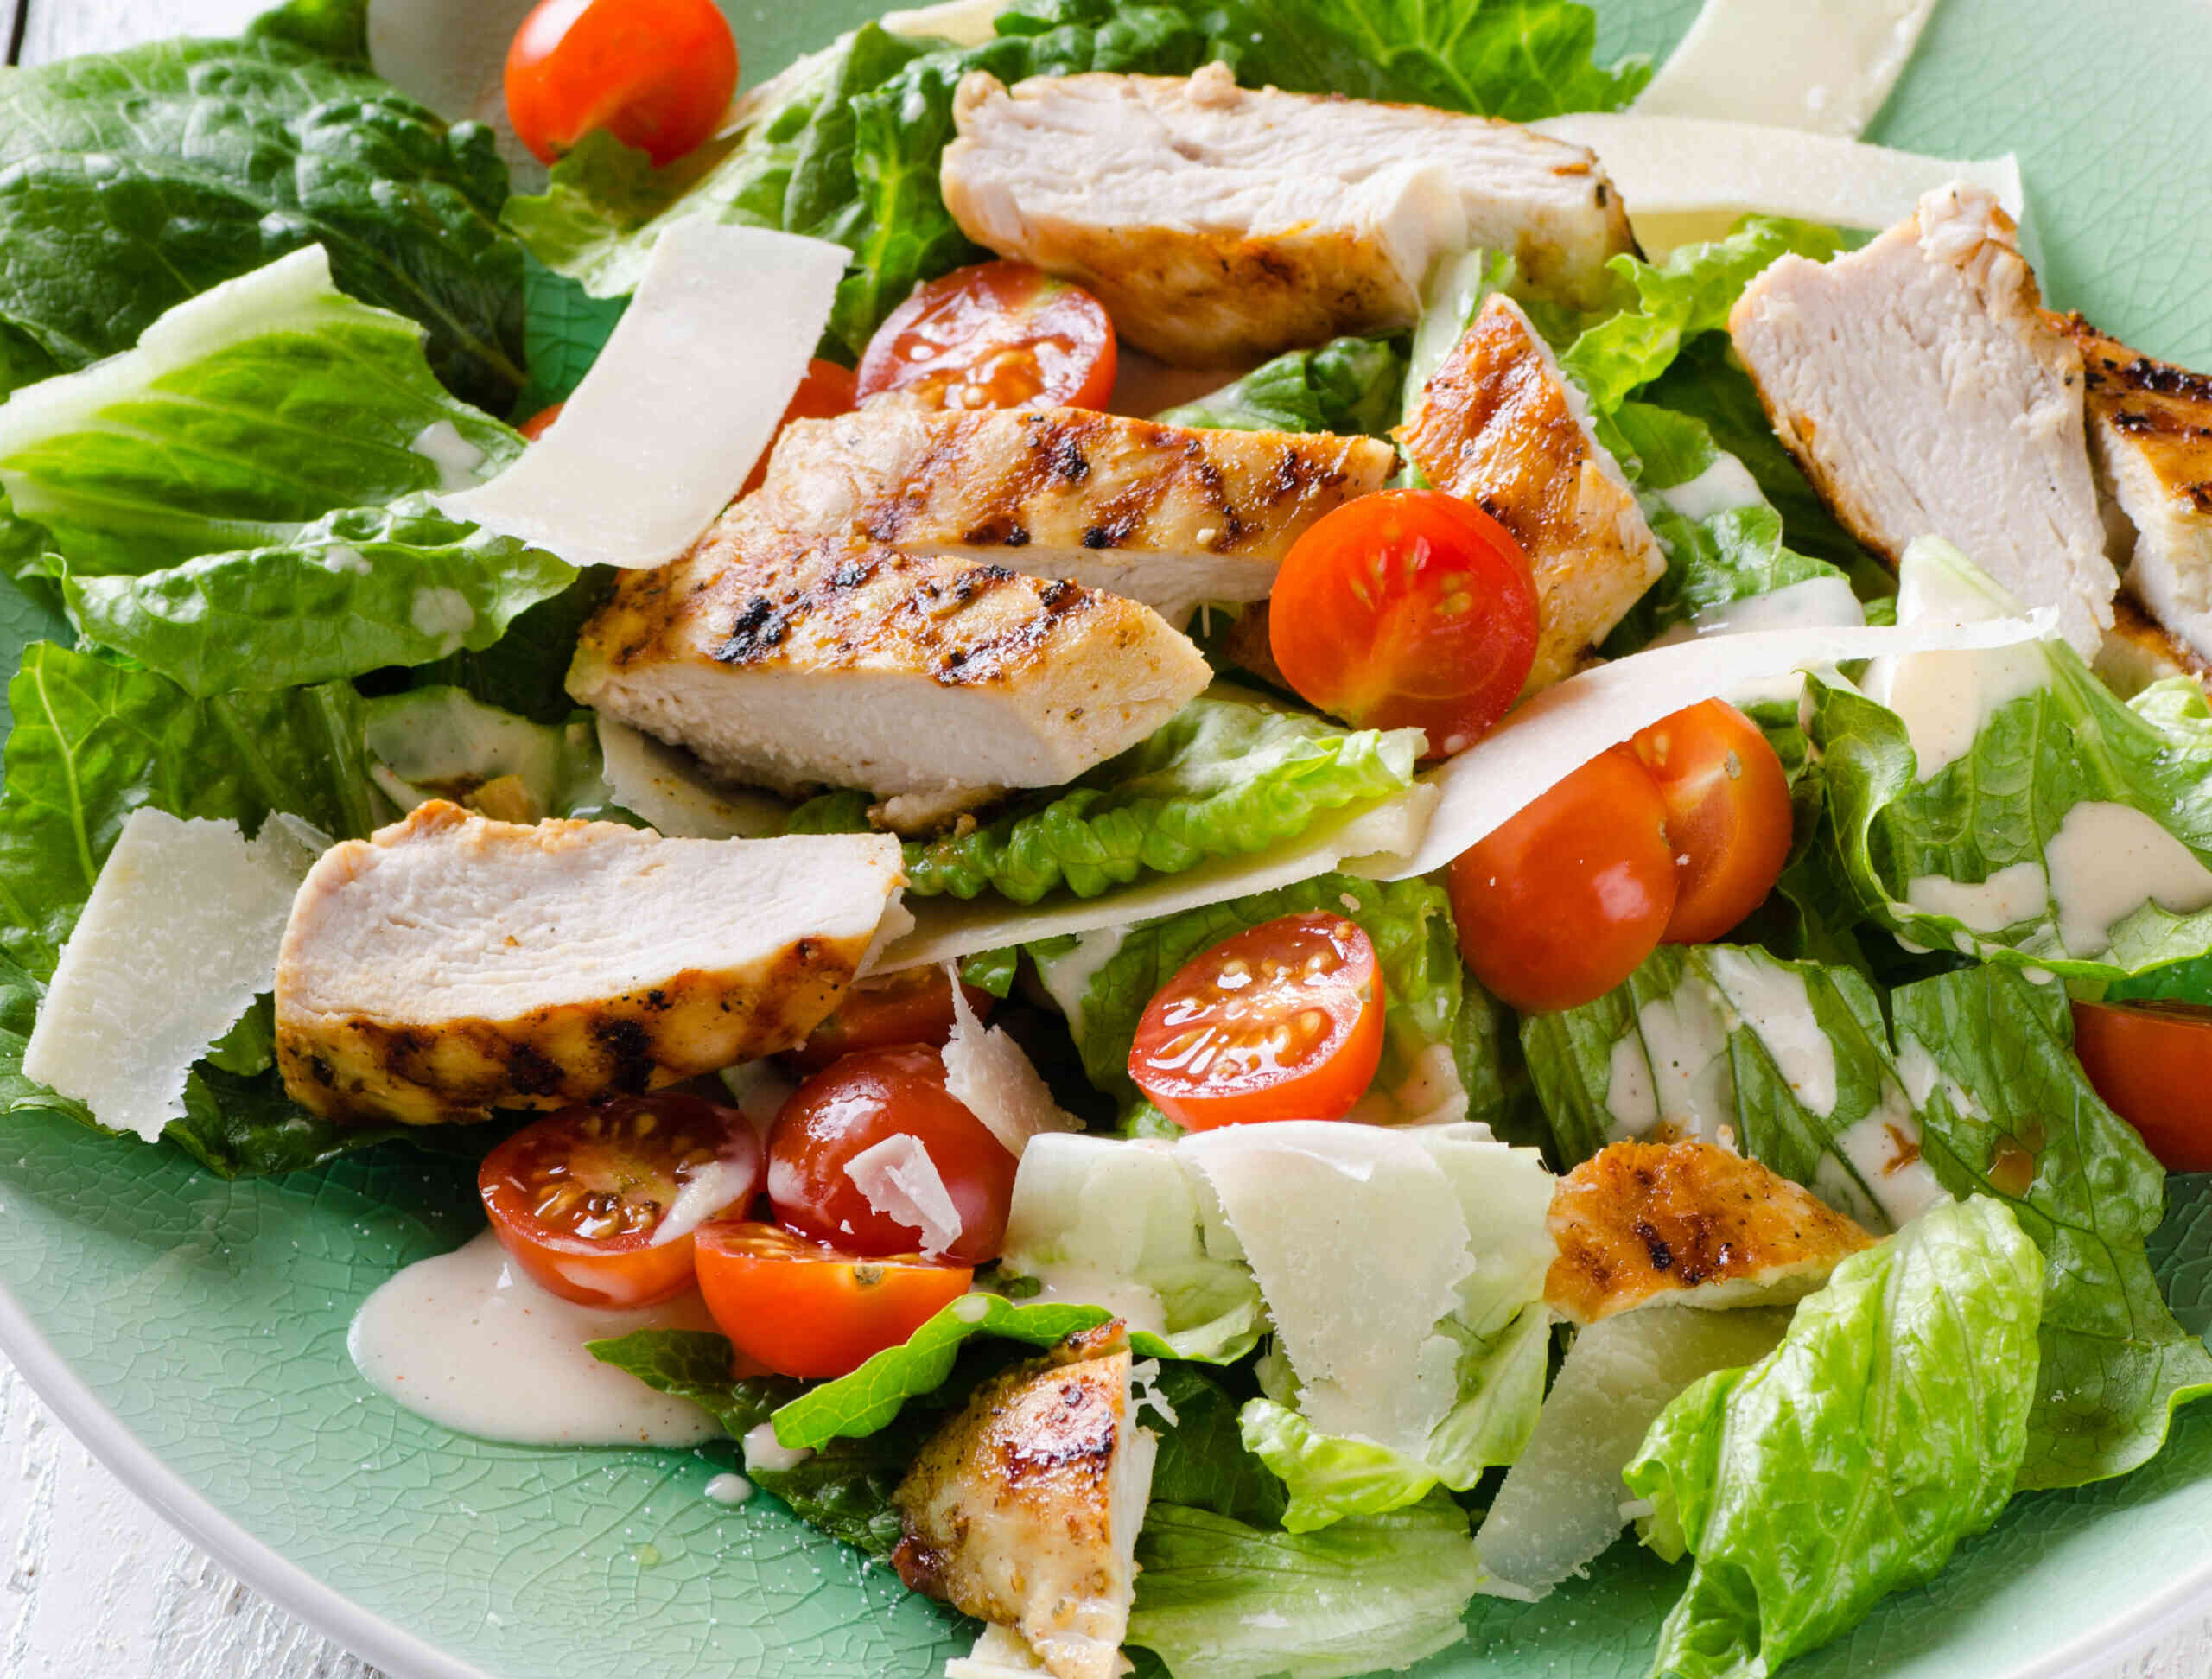 Salad ức gà là một món ăn lành mạnh, giàu protein và chất xơ.